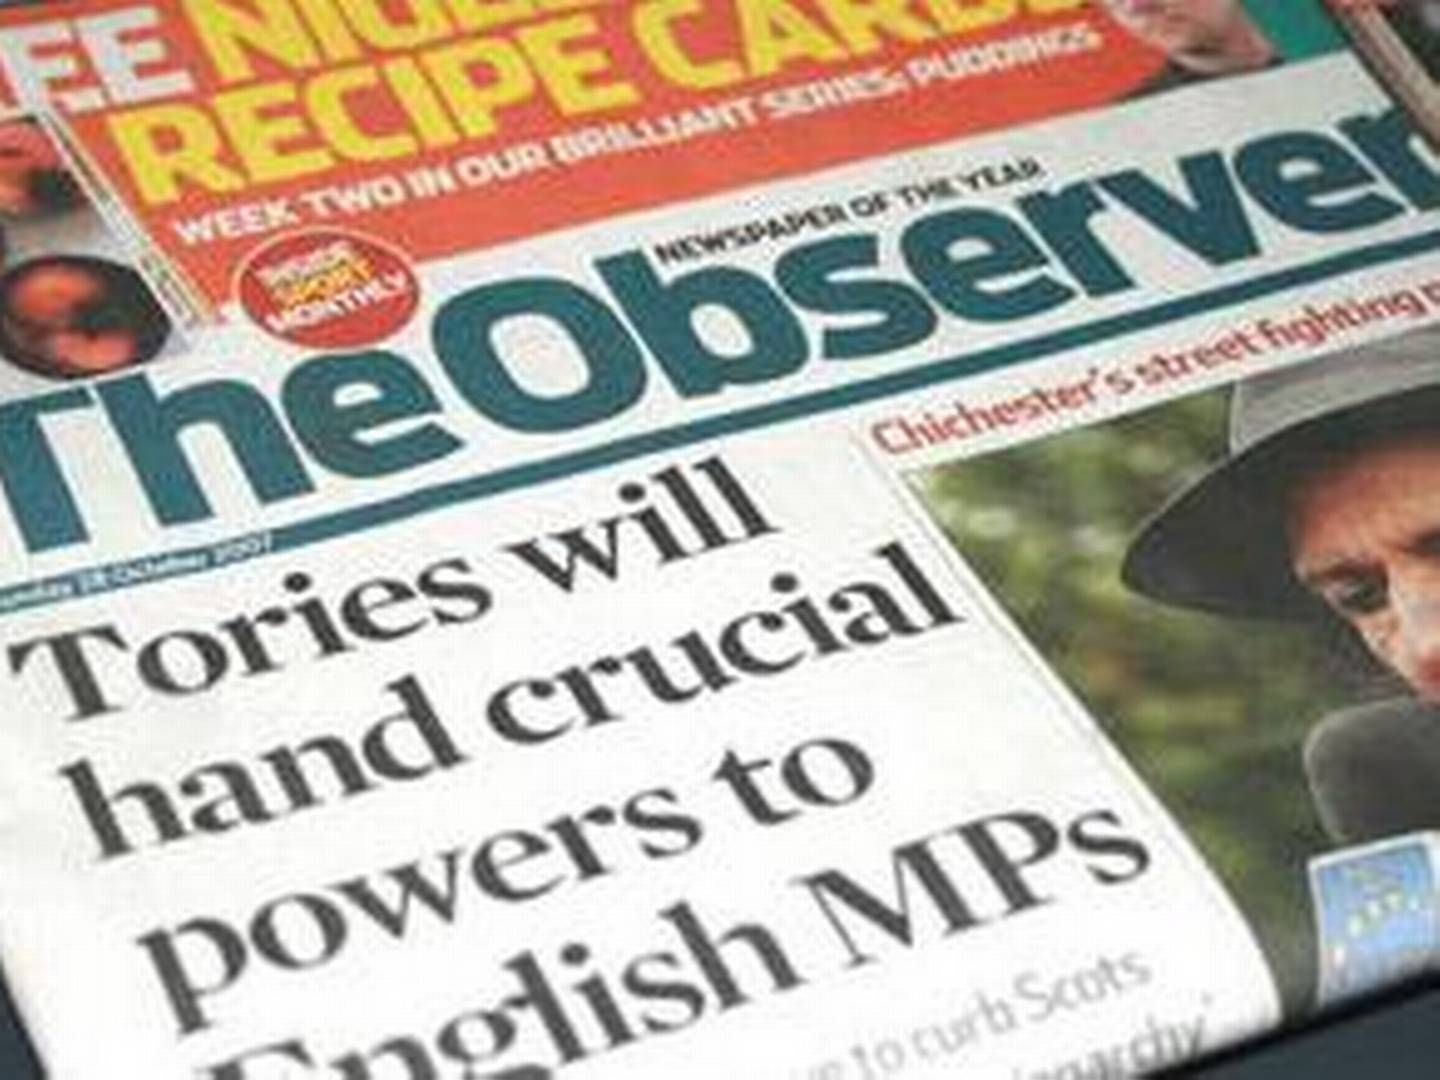 The Observer var blandt vinderne af European Press Prize for bedste kommentator